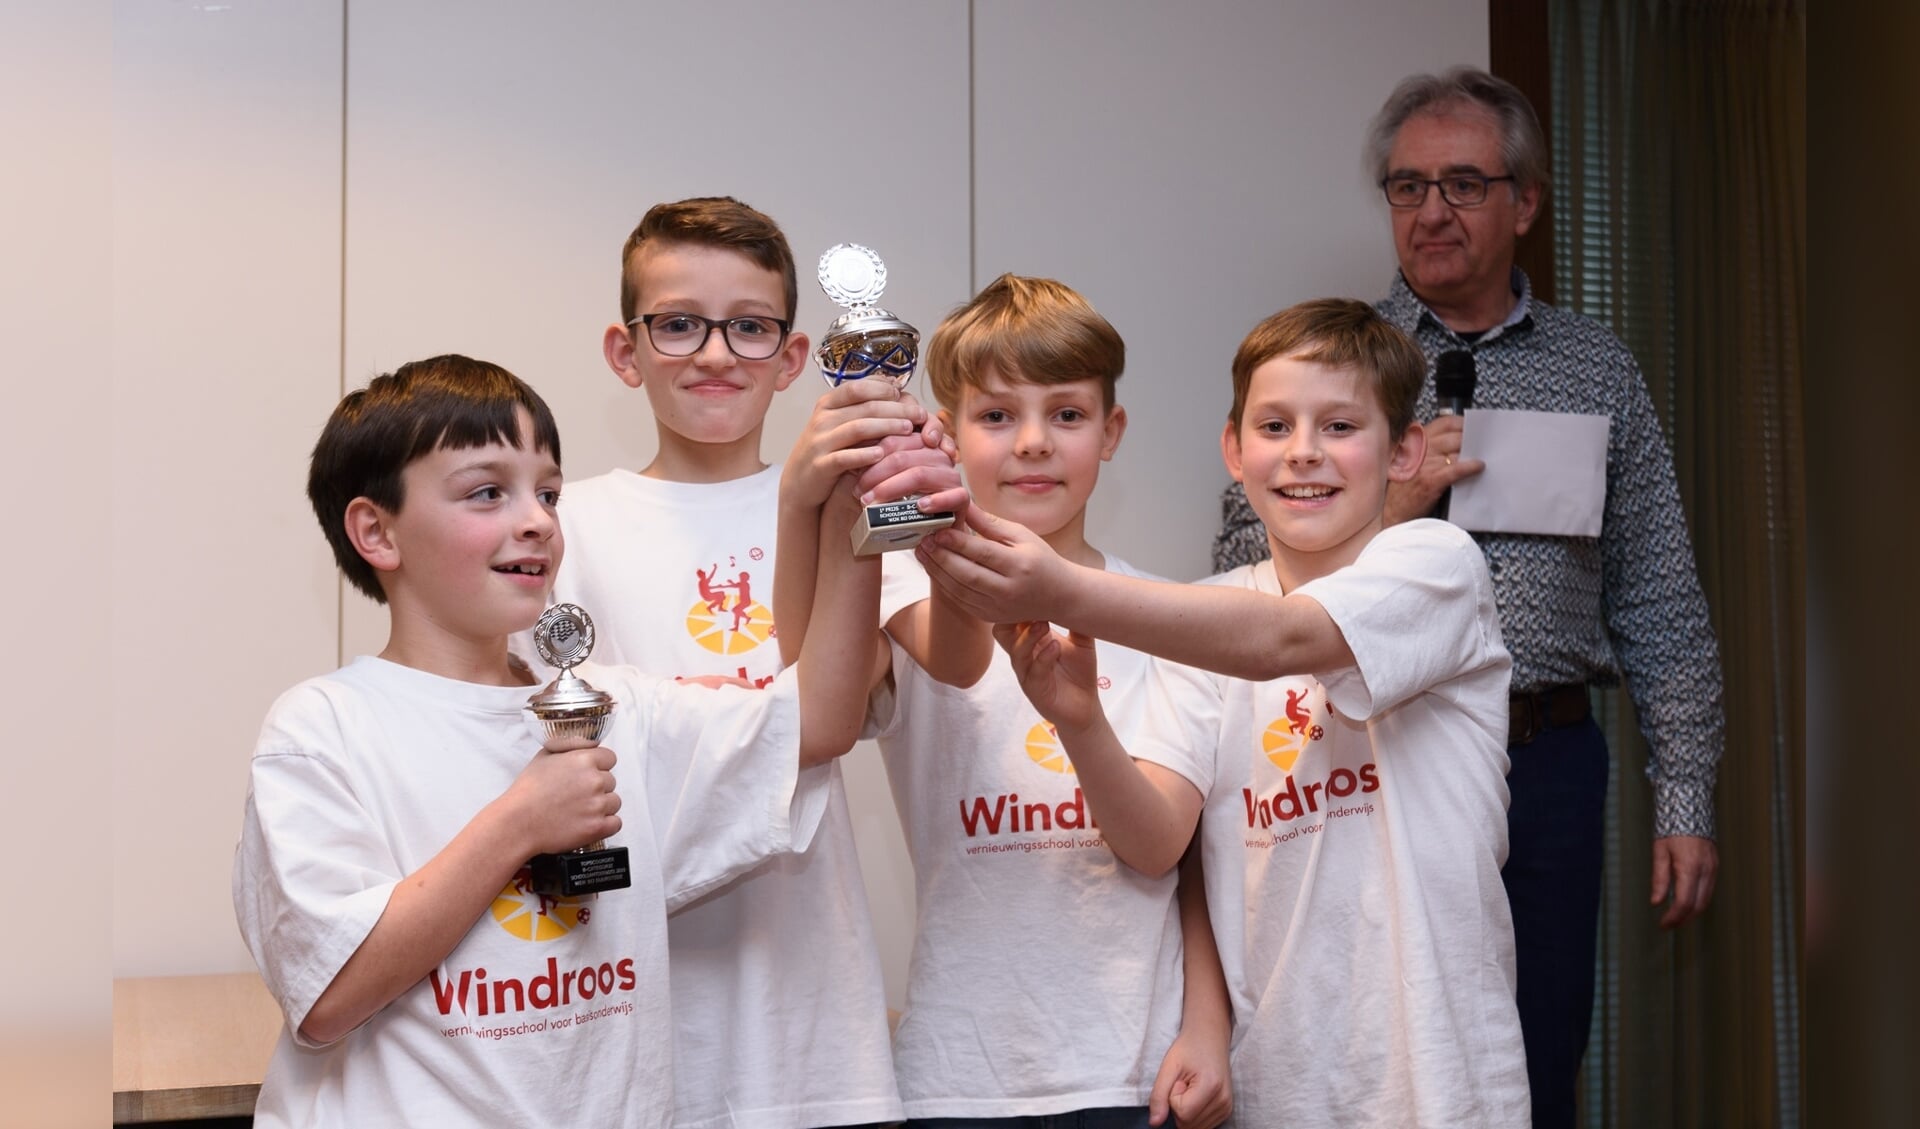 De Windroos 1 wint damkampioenschap onderbouw